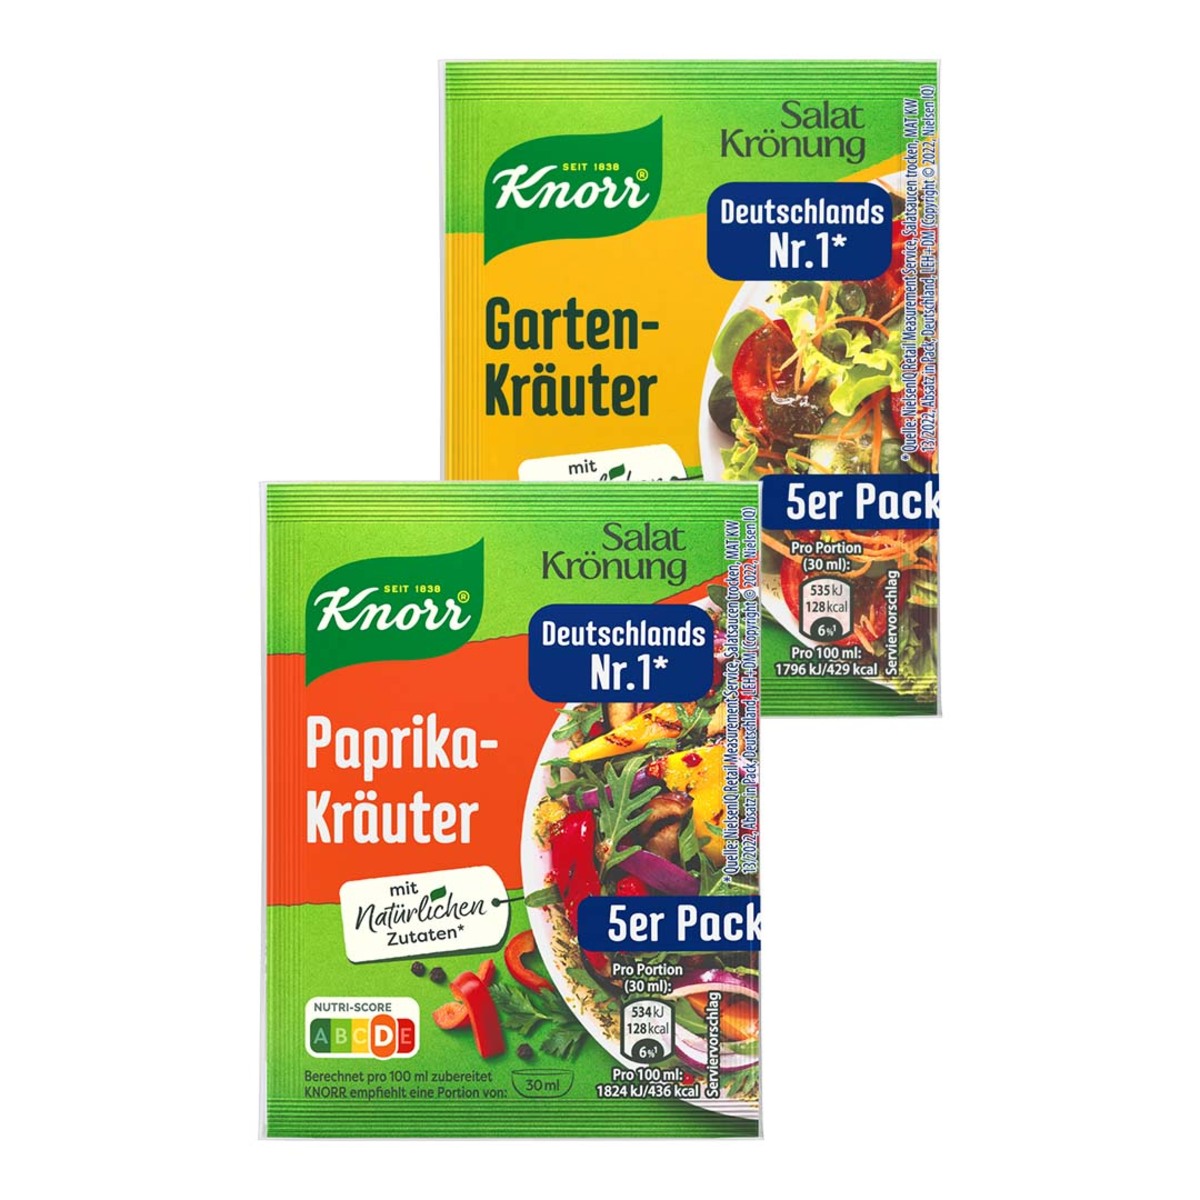 Knorr SalatkrÖnung Paprika KrÄuter Je 45 G Btl Oder GartenkrÄuter Und Weitere Sorten Je 40 G